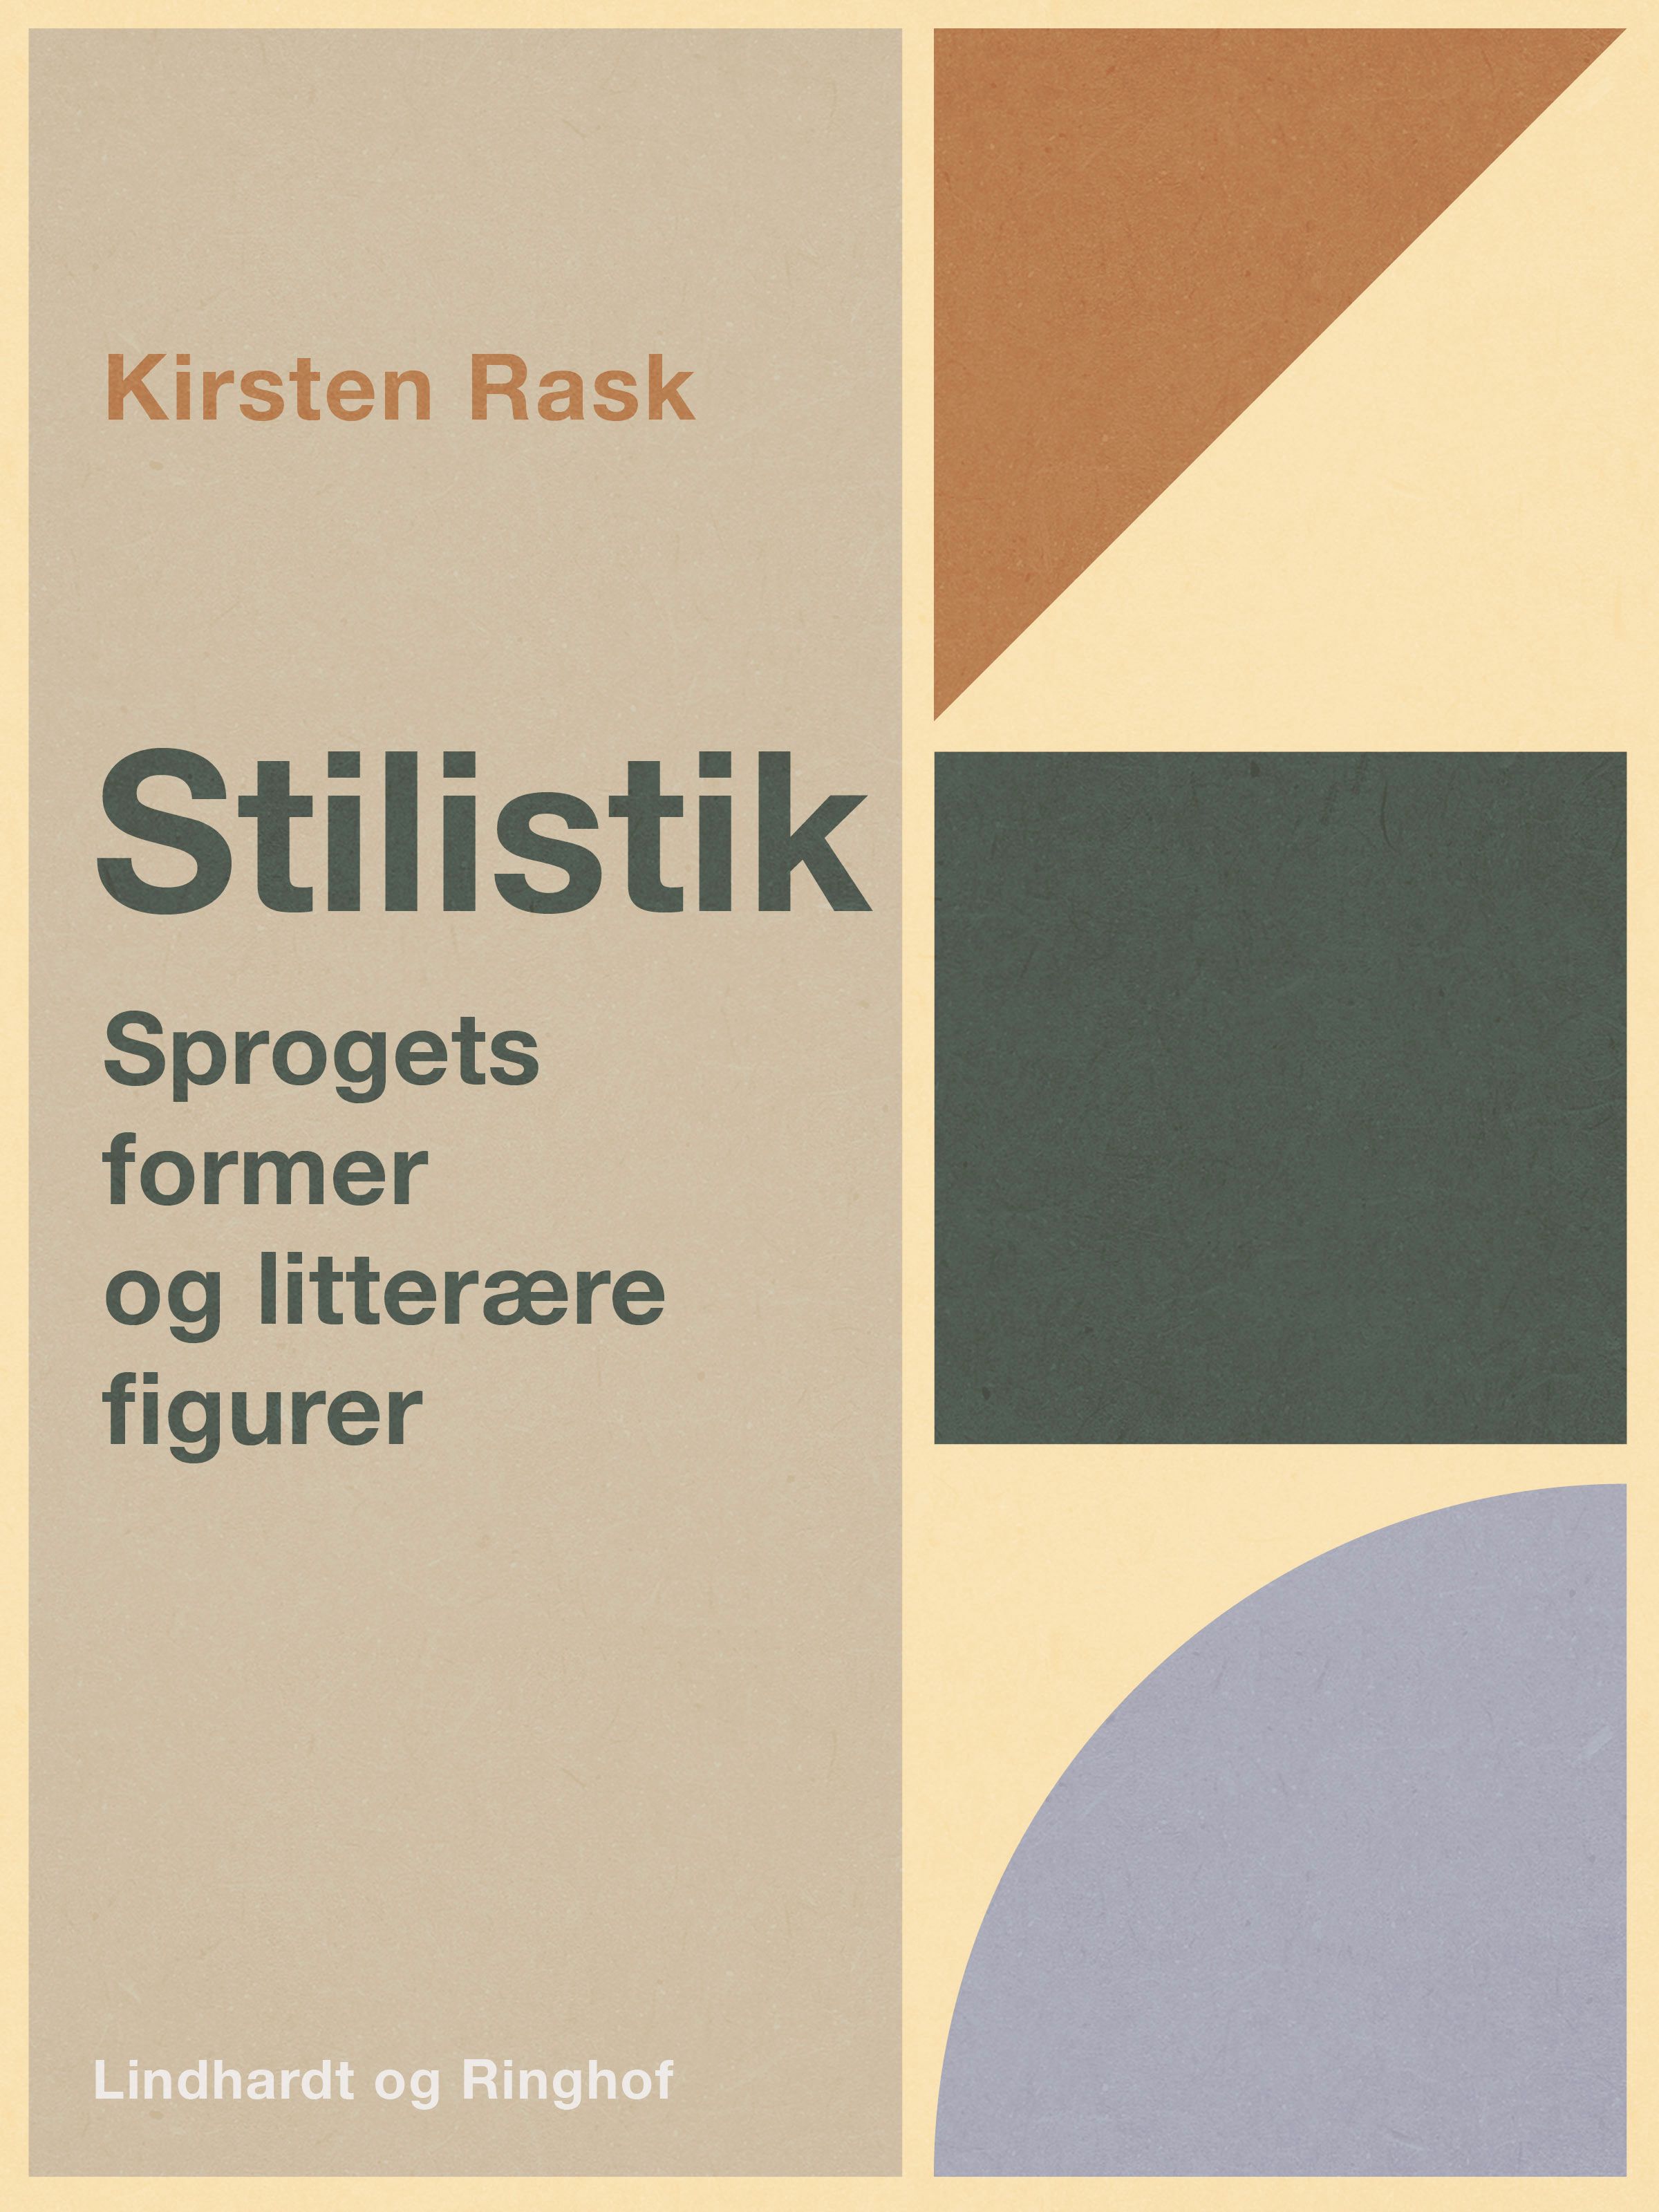 Stilistik. Sprogets former og litterære figurer, e-bok av Kirsten Rask